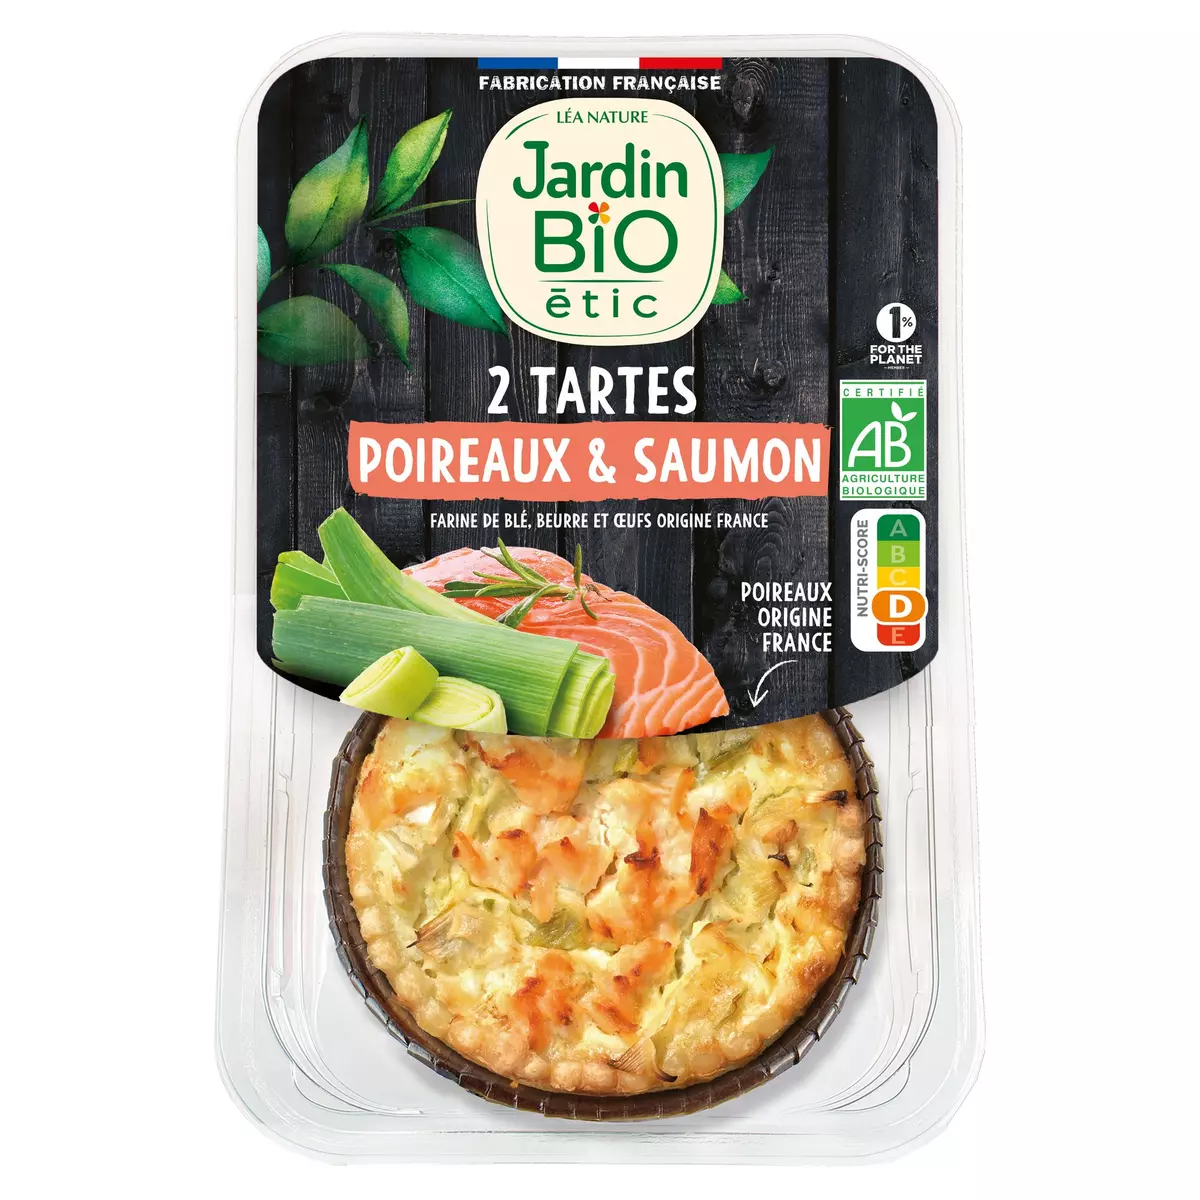 JARDIN BIO ETIC Tartes salées bio poireaux et saumon 2 tartes 230g